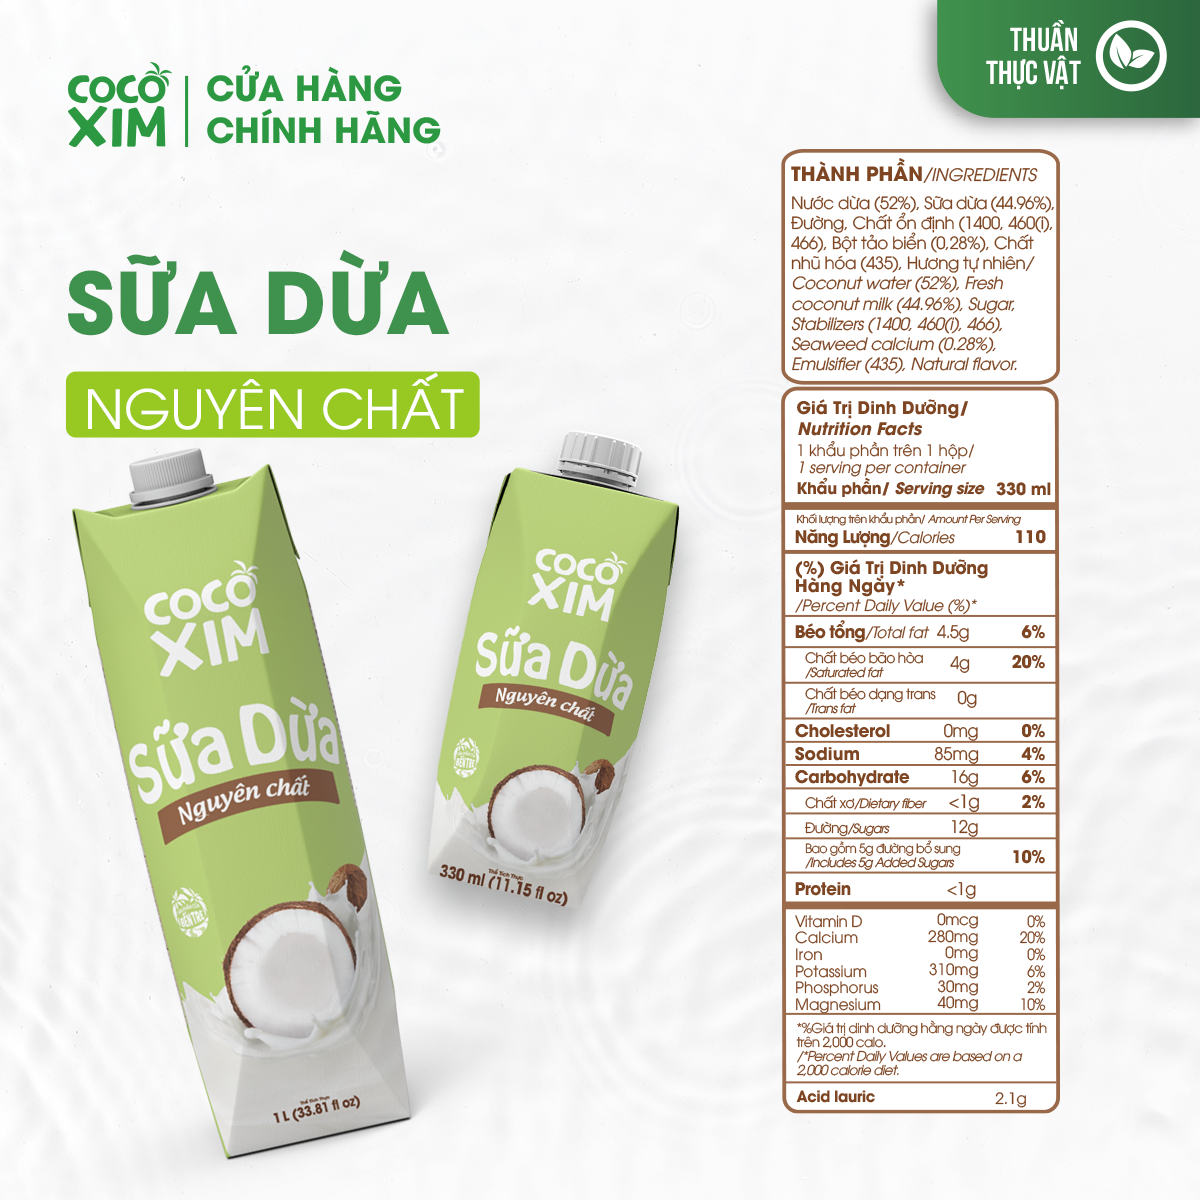 Thùng 12 Hộp Sữa Dừa Cococxim Nguyên Chất 330ml/Hộp 